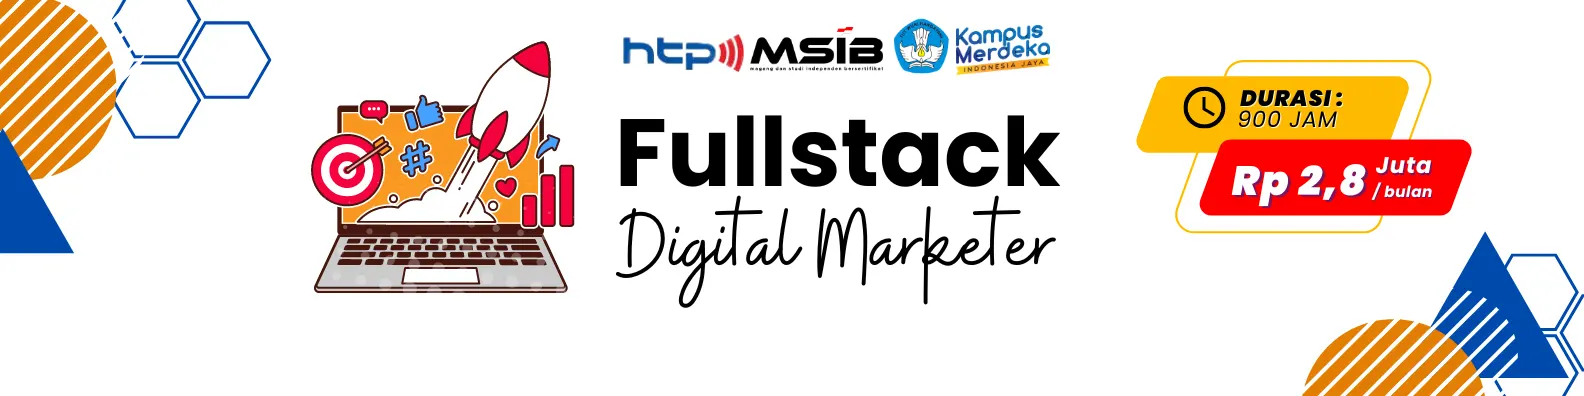 SIB-Fullstack Digital Marketer